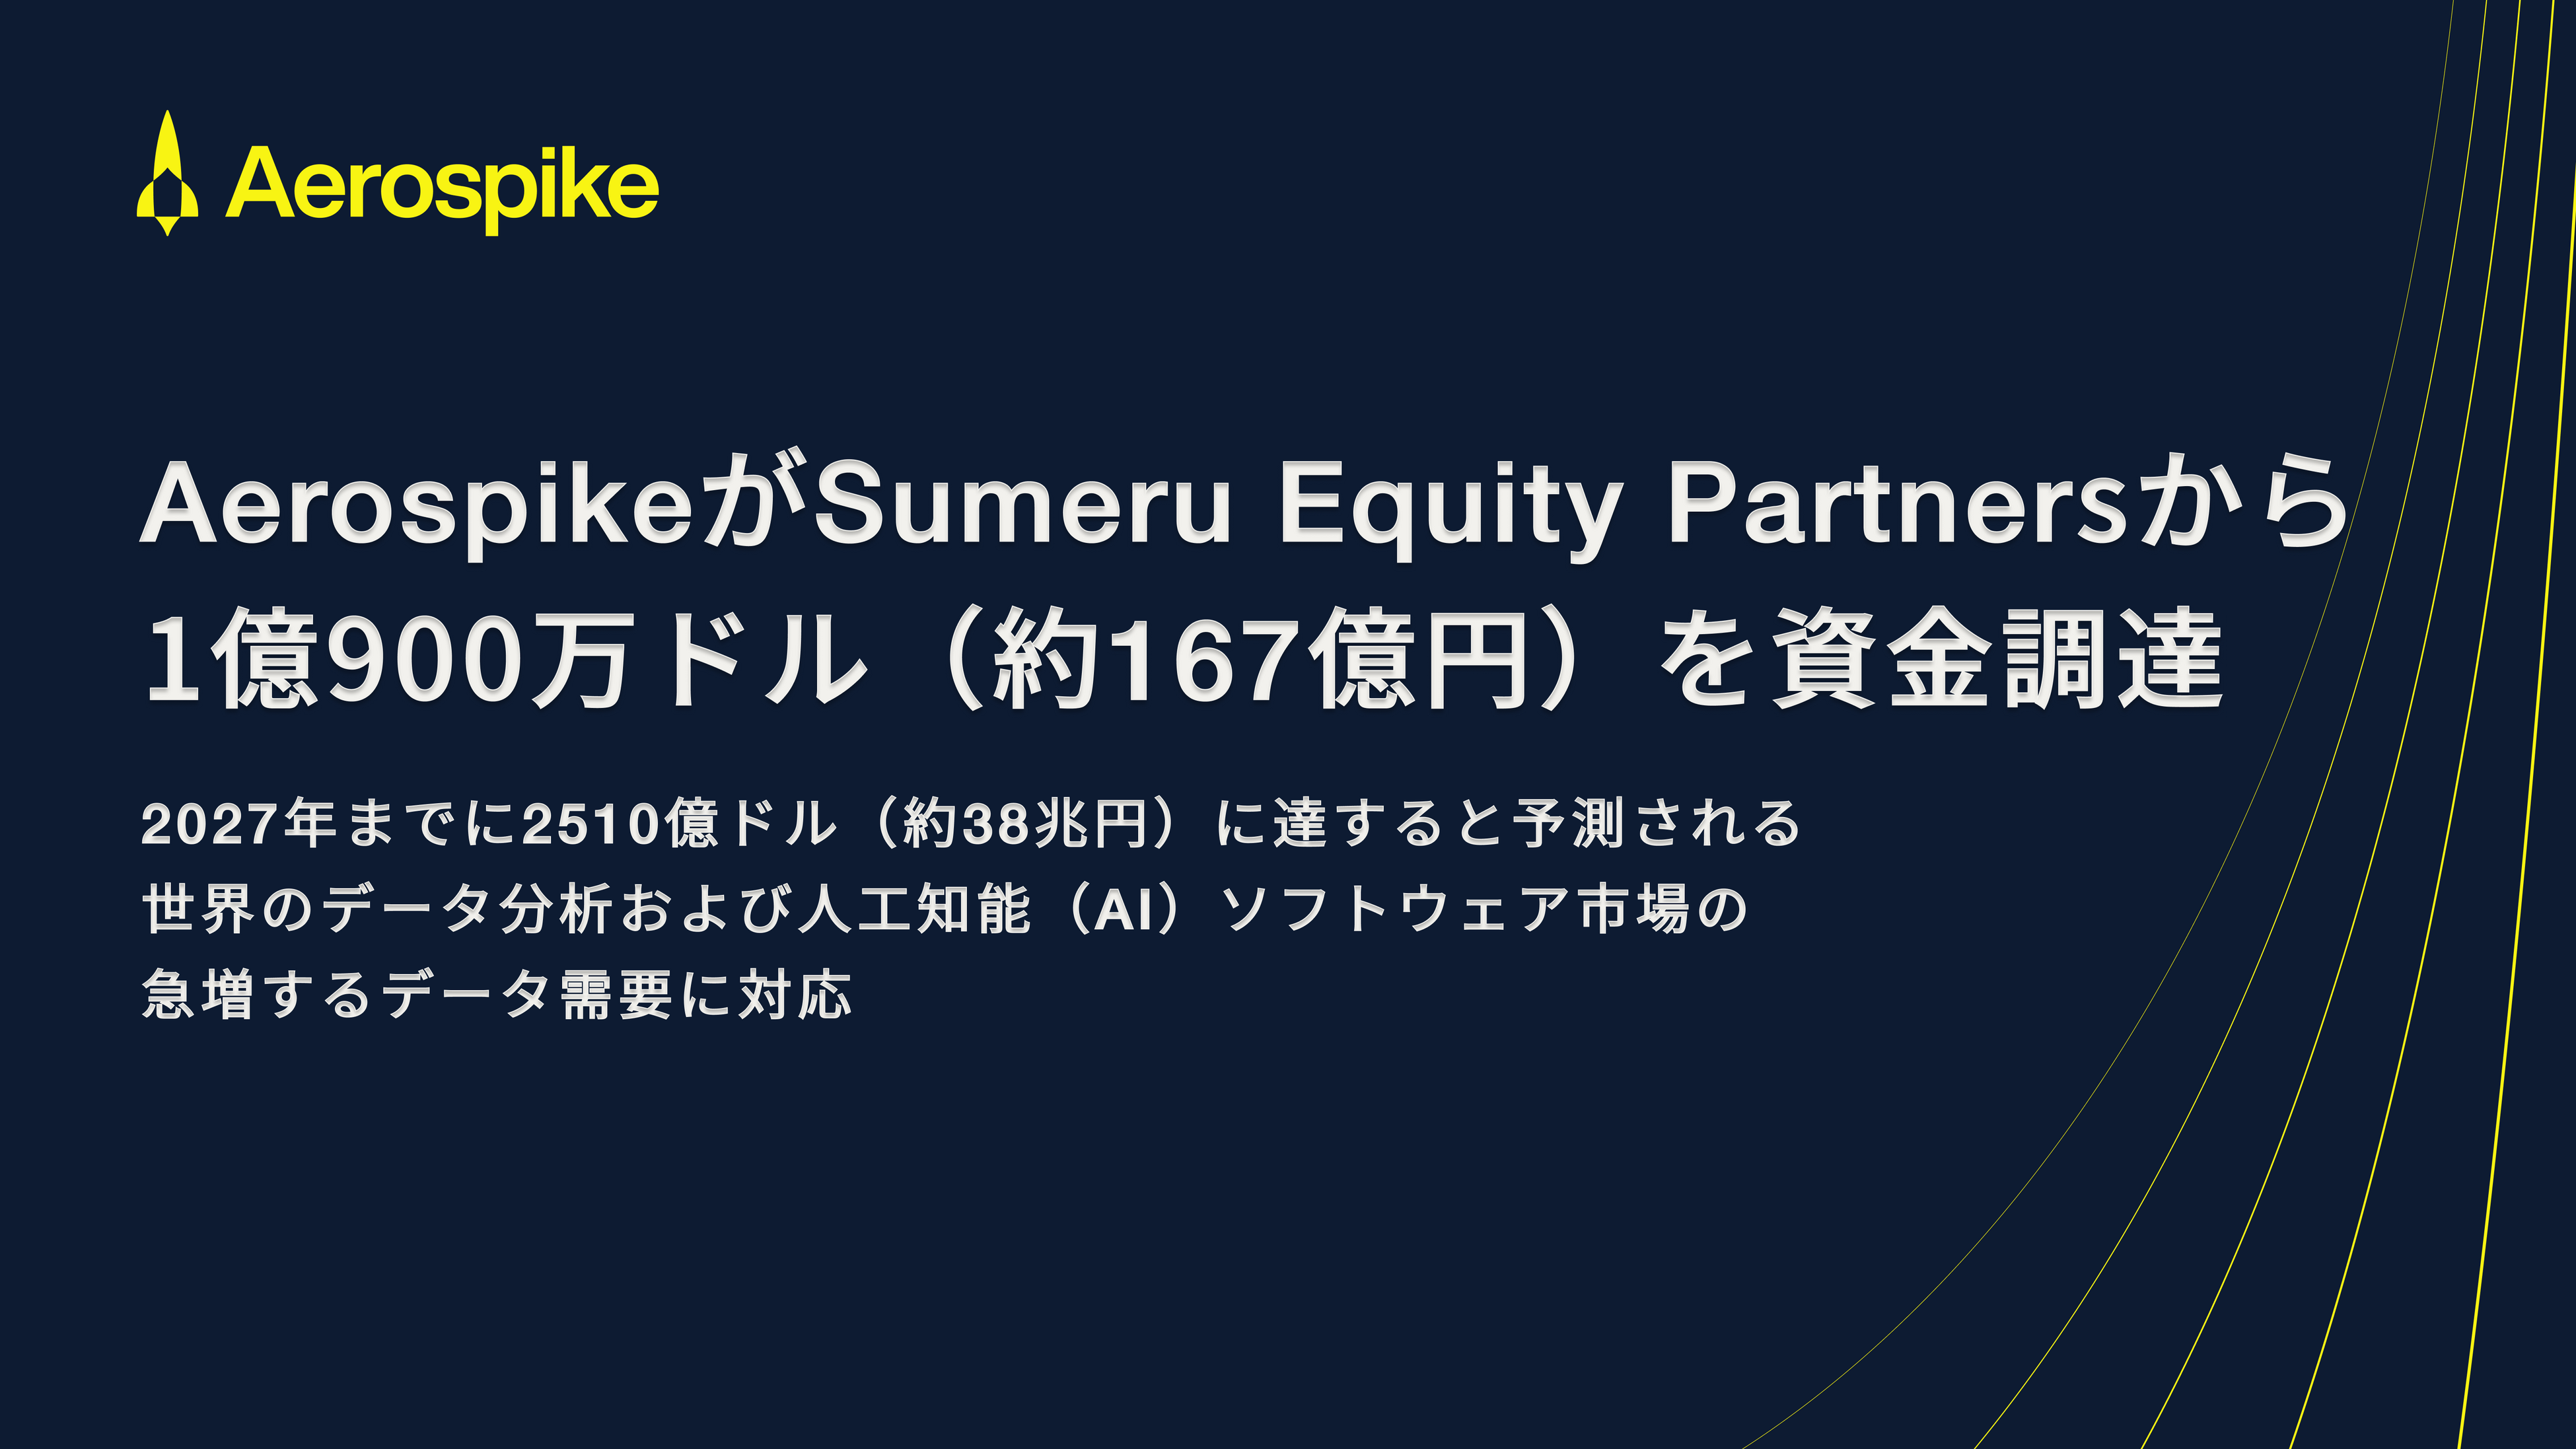 AerospikeSumeru Equity Partners1900hB